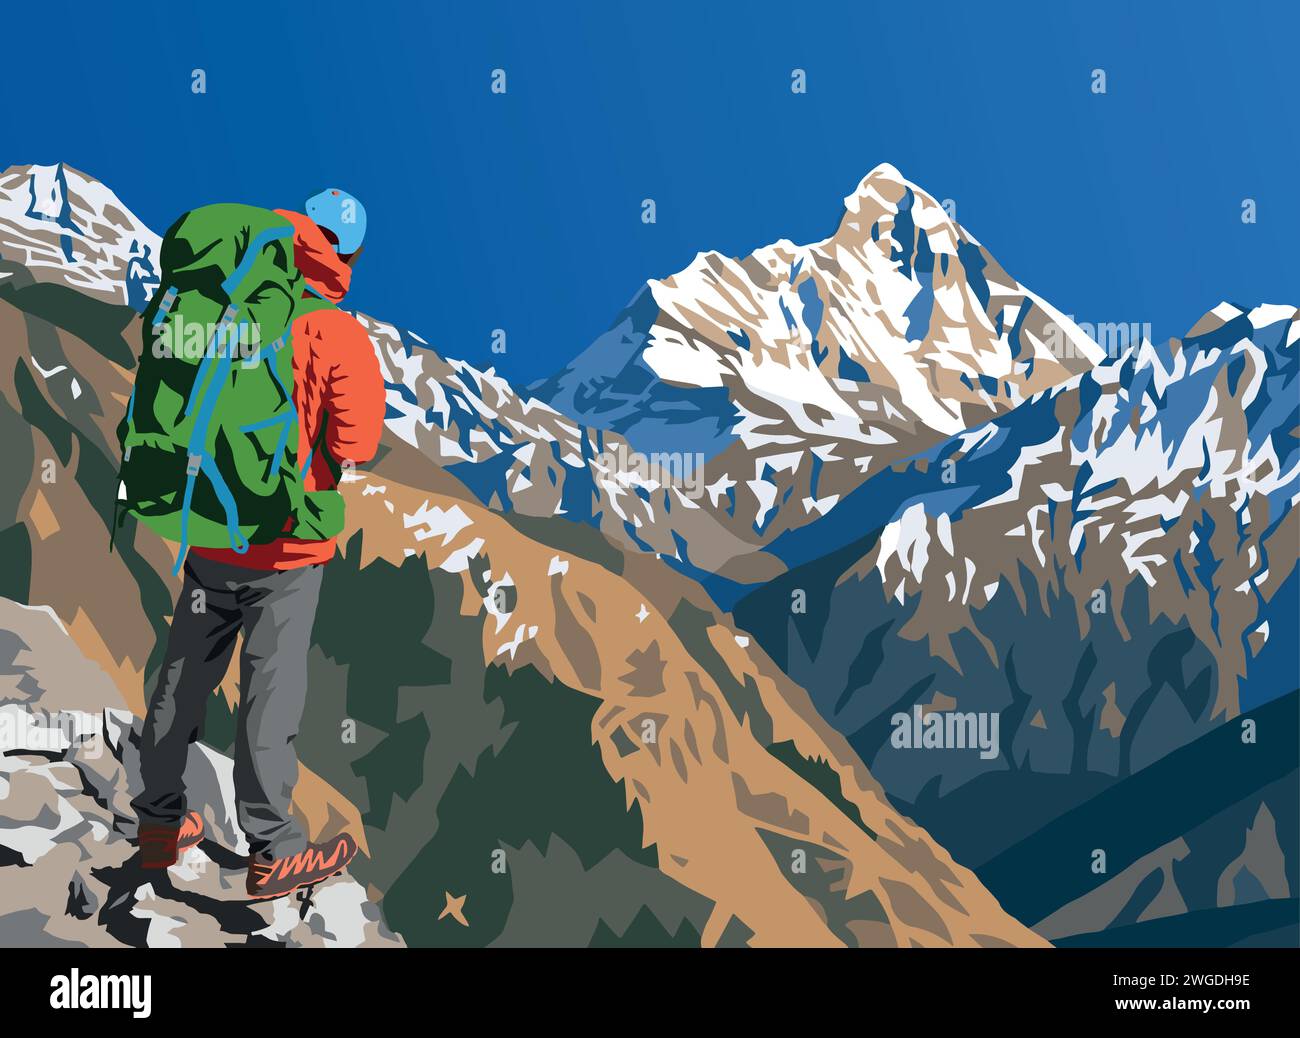 Mont Nanda Devi illustration vectorielle avec randonneur, l'un des meilleurs monts de l'Himalaya indien, vu de Joshimath Auli, Uttarakhand, Inde, Inde Hima indienne Illustration de Vecteur